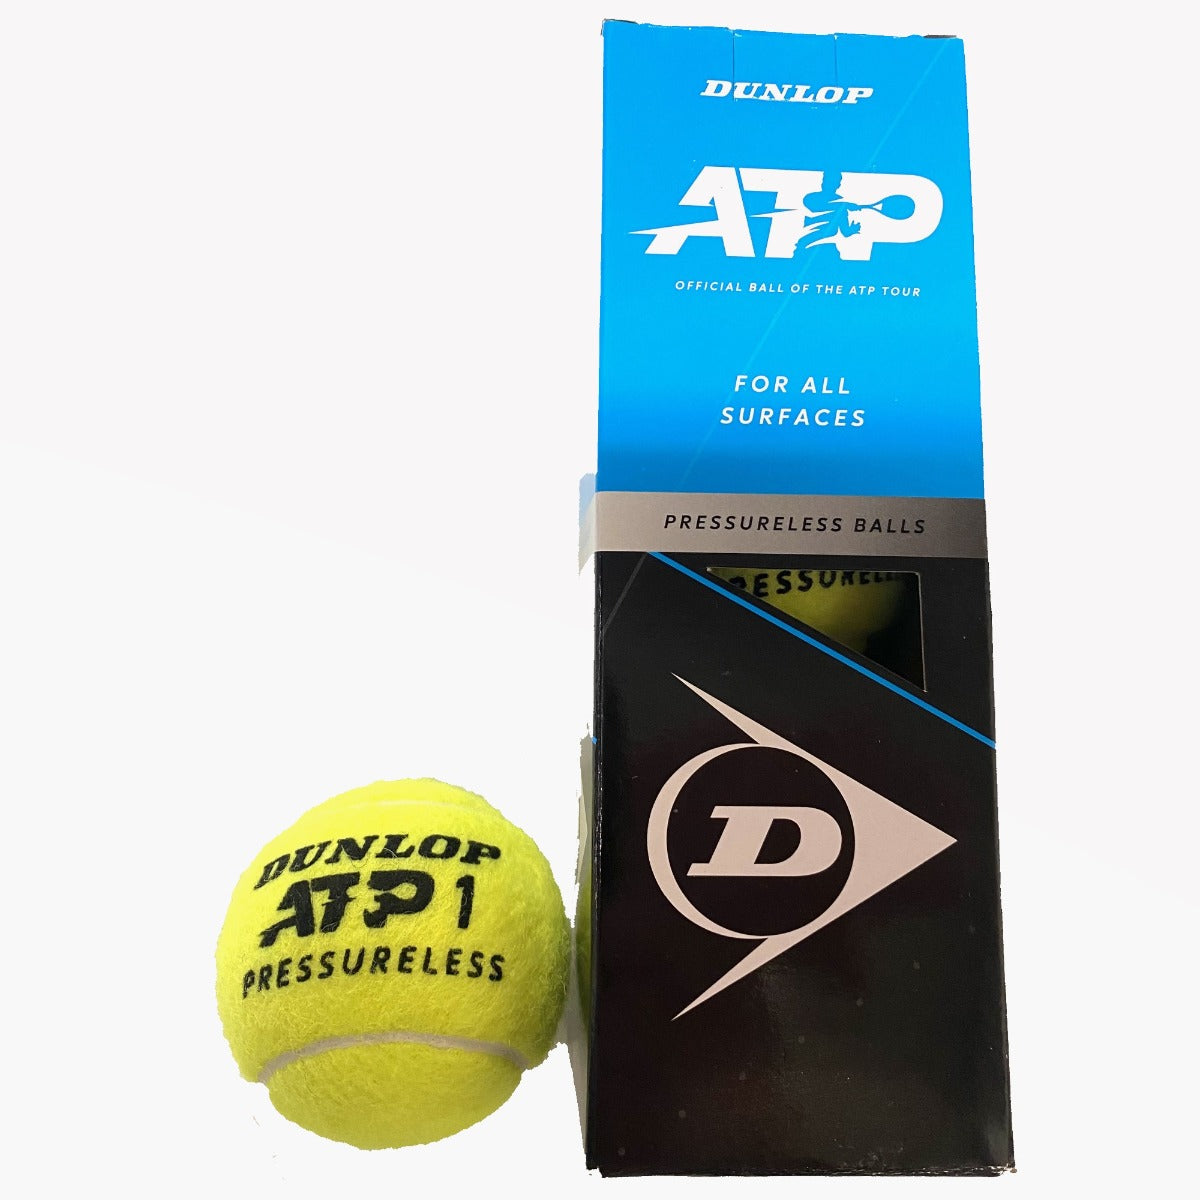 Dunlop ATP 1 Pressureless Tennis Ball